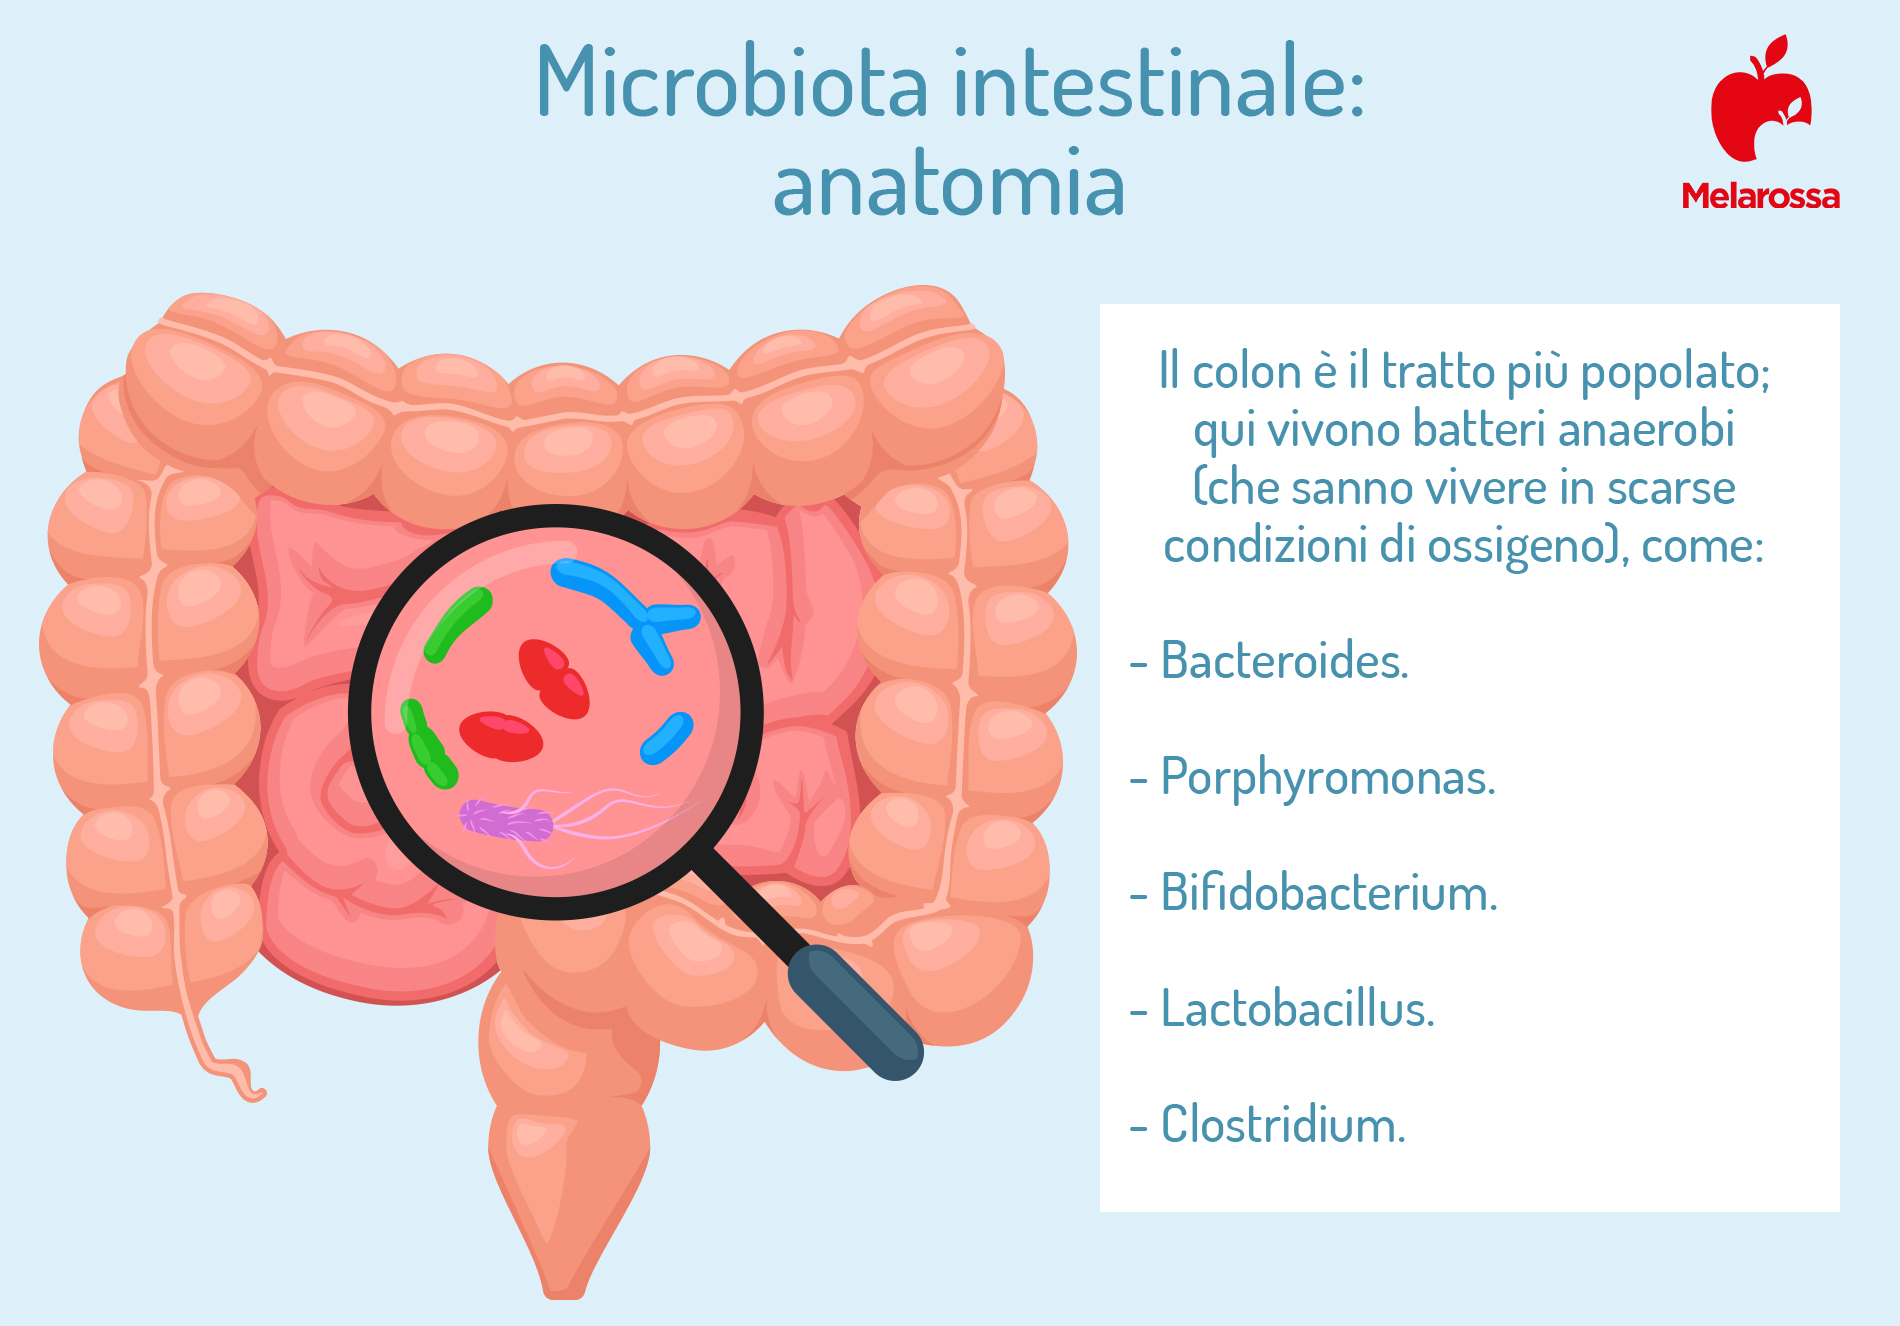 microbiota intestinale: anatomia 